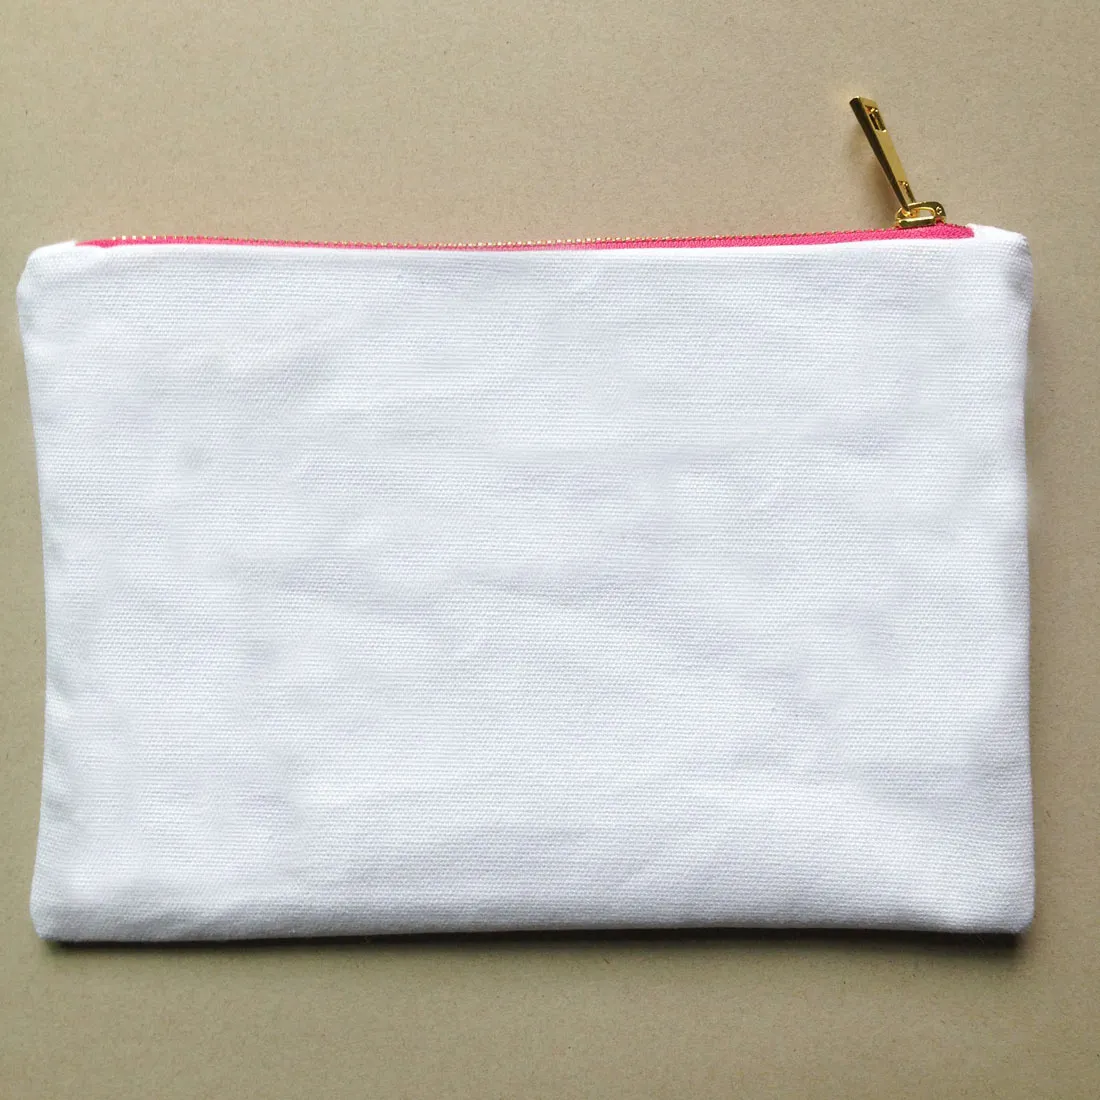 plain lona de algodão em branco compo o saco com forro superior zip ouro qualidade 7x10in saco cor higiene sólida para pintura DIY / impressão preto / branco / marfim